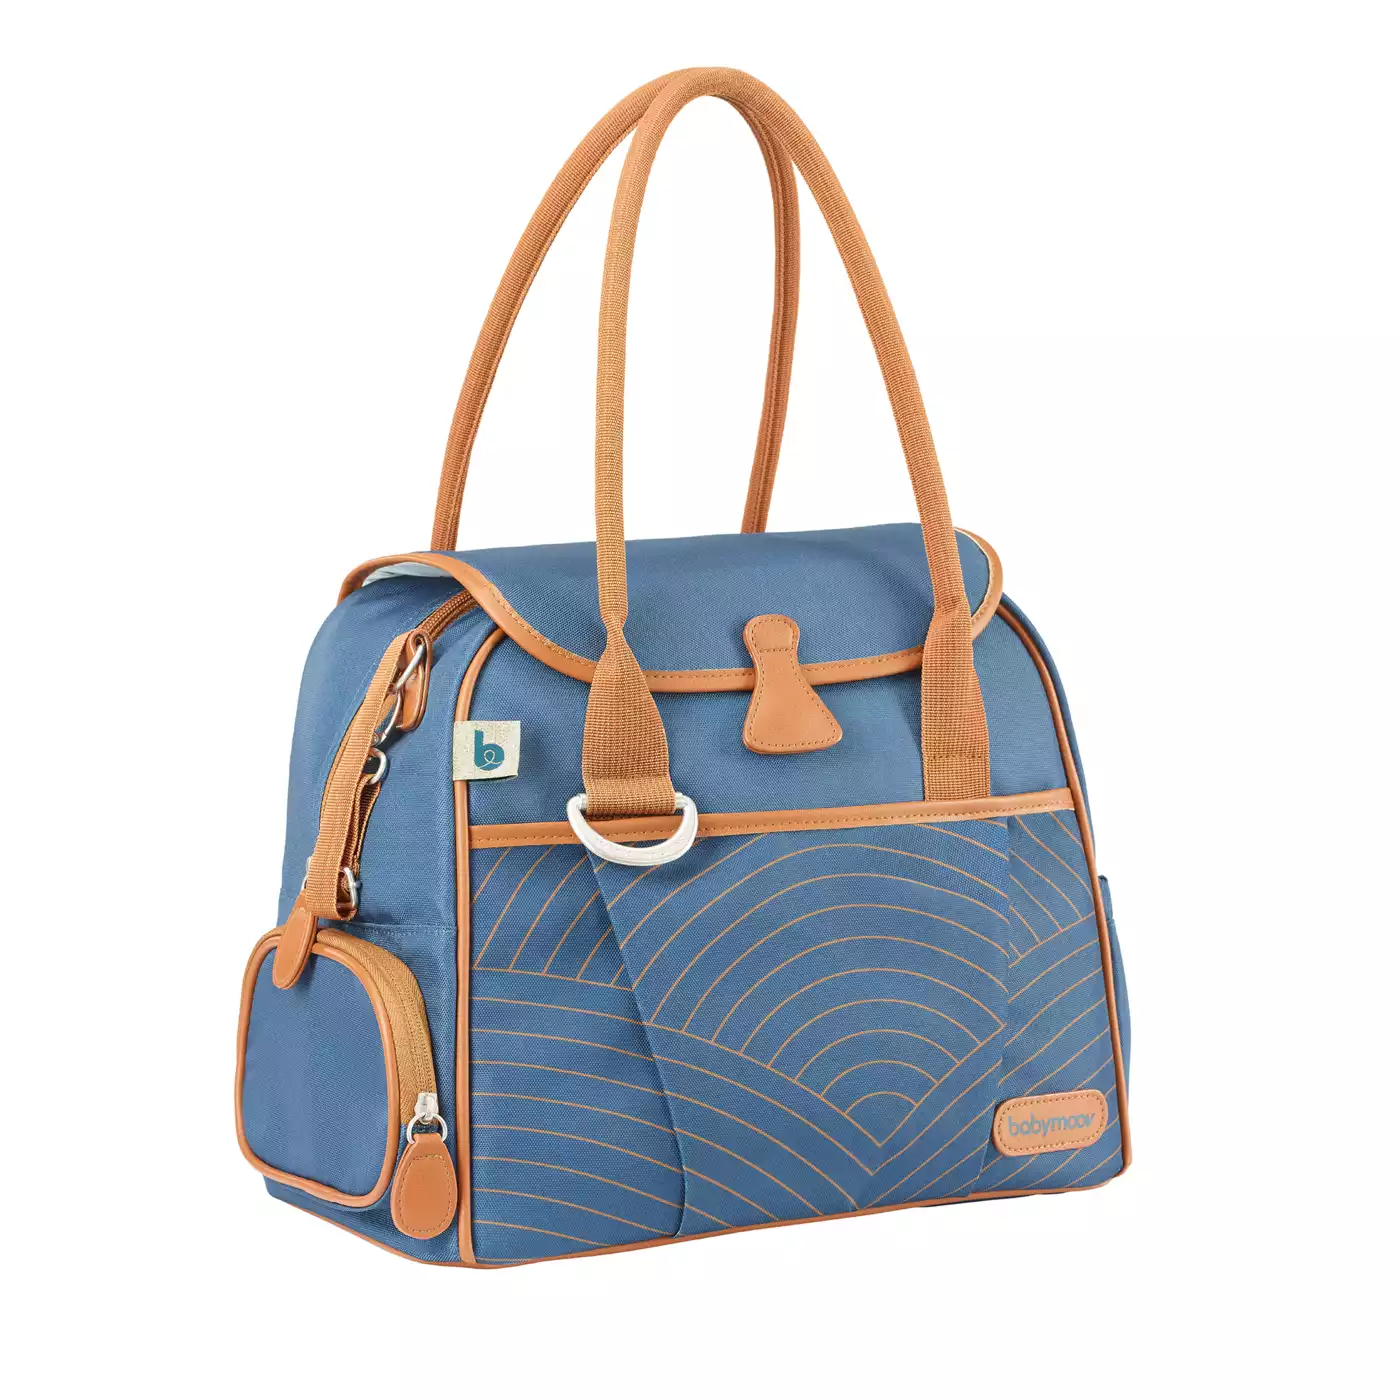 Wickeltasche Style Bag Blue Navy babymoov Blau 2000565168519 5